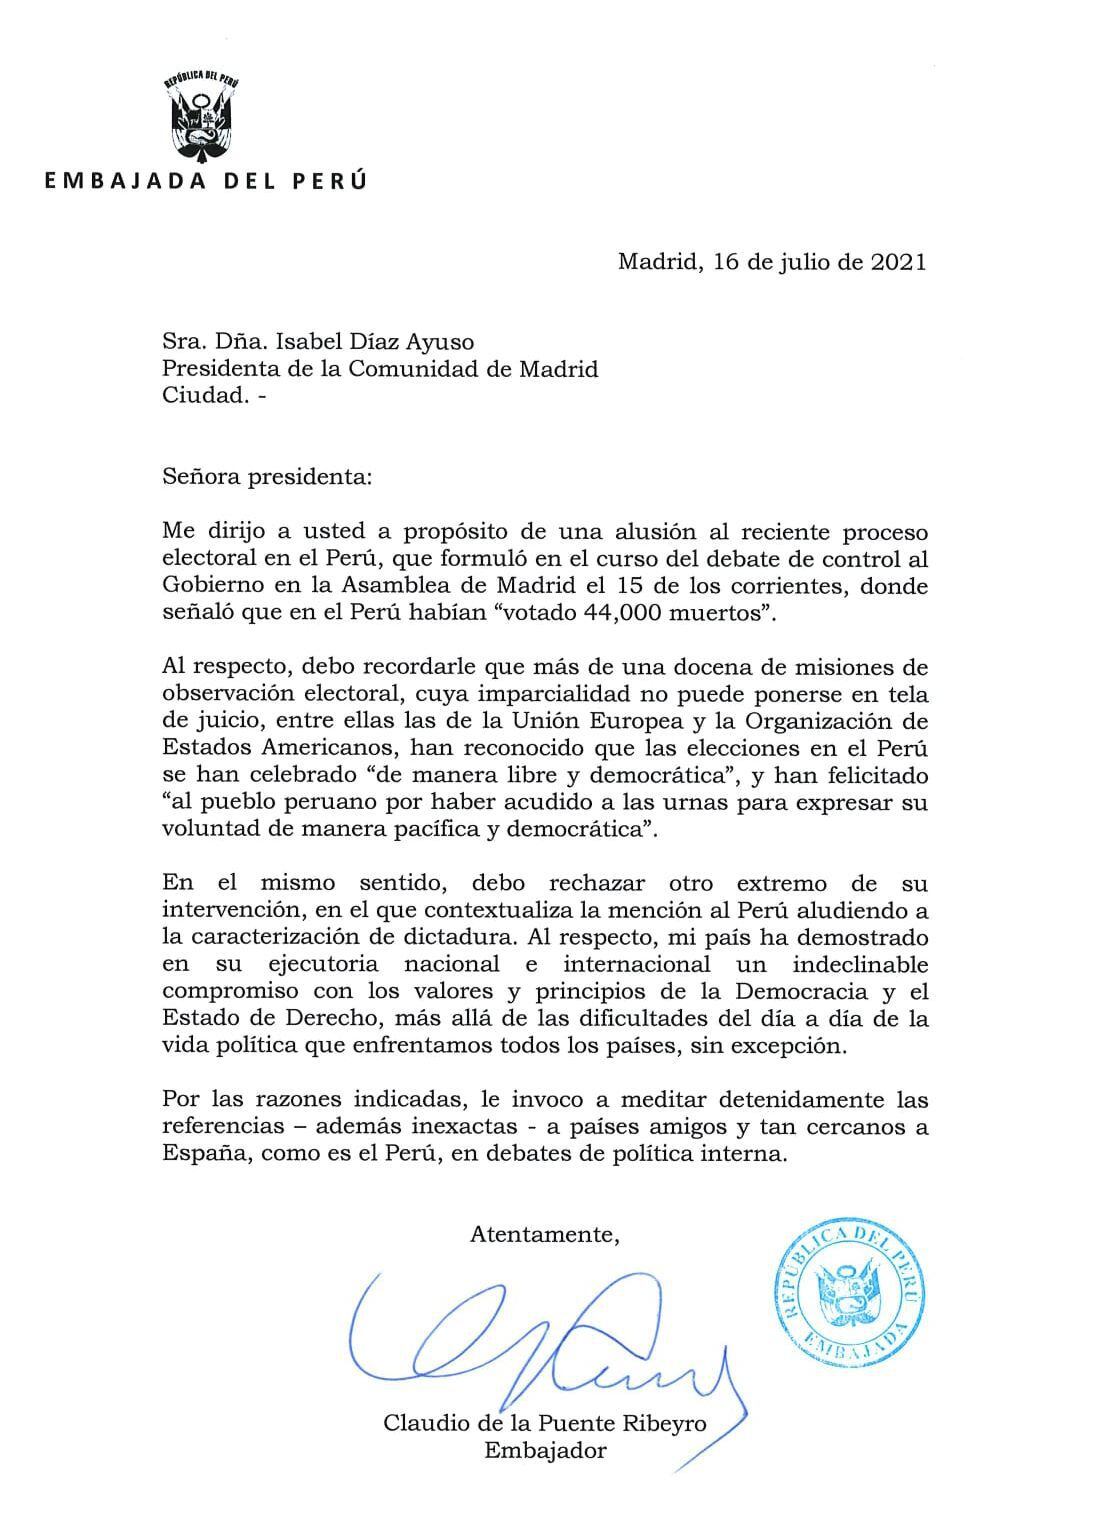 Las afirmaciones de Isabel Díaz Ayuso fueron respondidas por la Embajada de Perú y la ONPE.